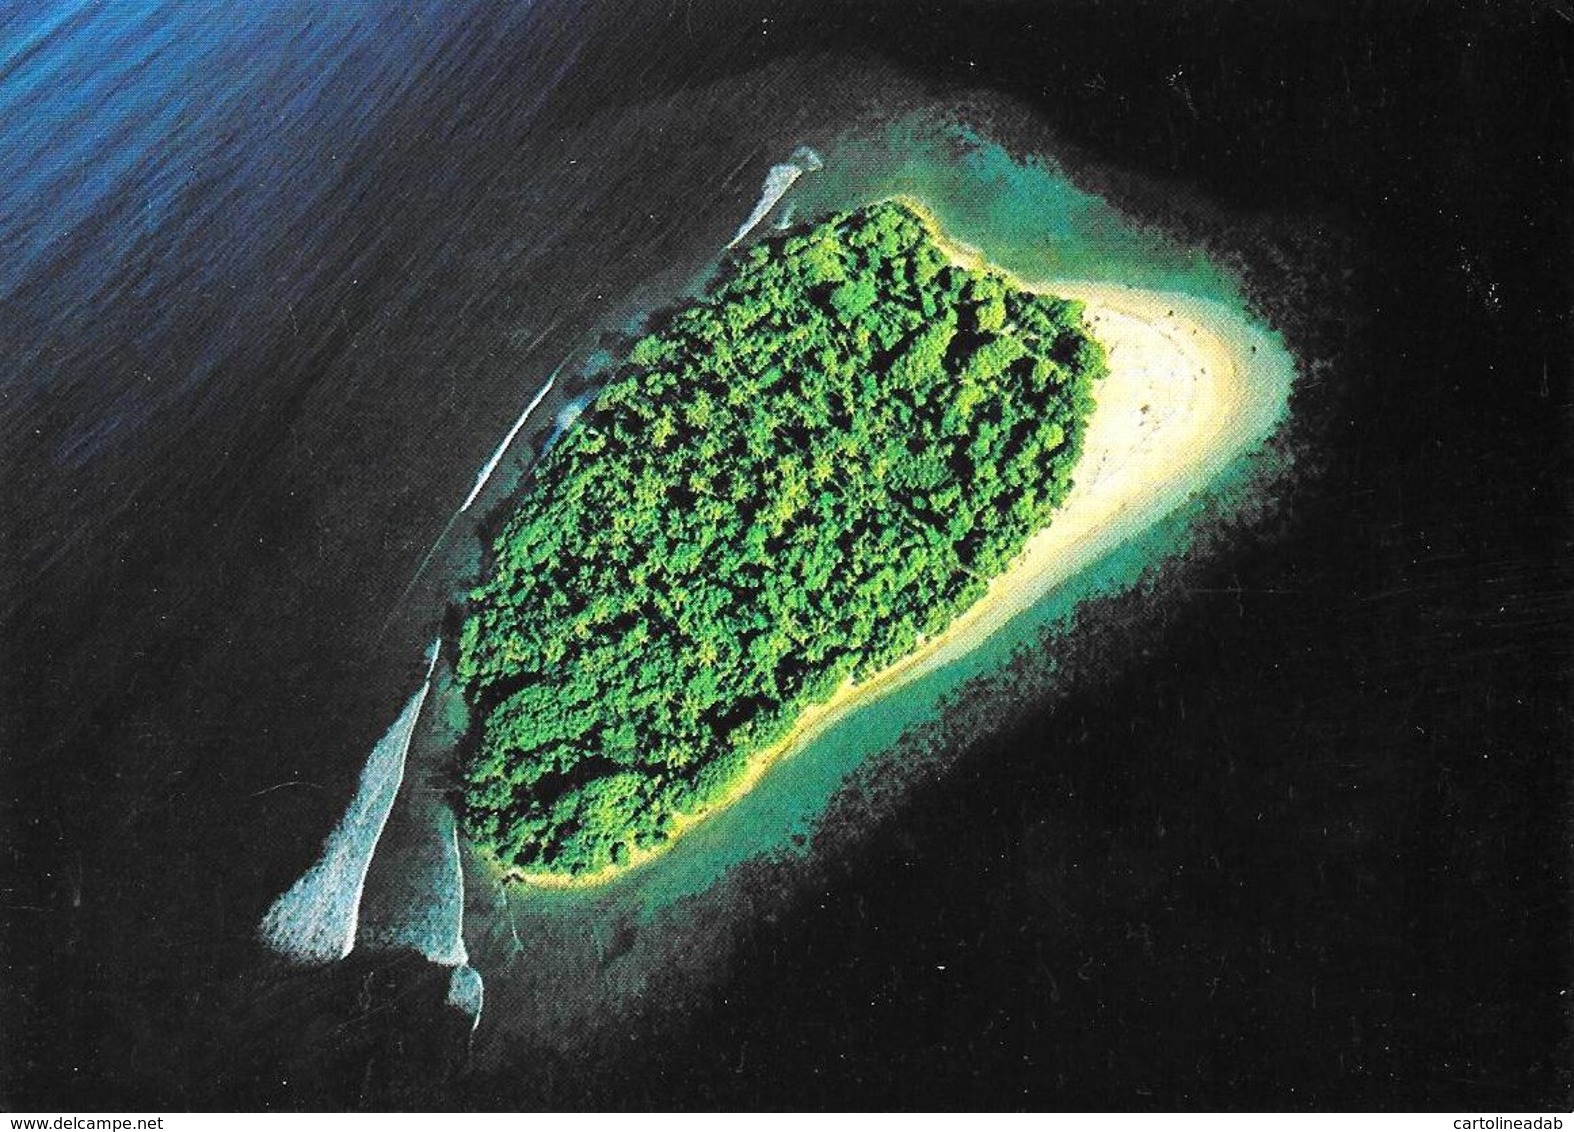 [MD3005] CPM - MALDIVE - UNIHABITED ISLAND - ART EDITION - BY ERIC KLEMM - Non Viaggiata - Maldiven